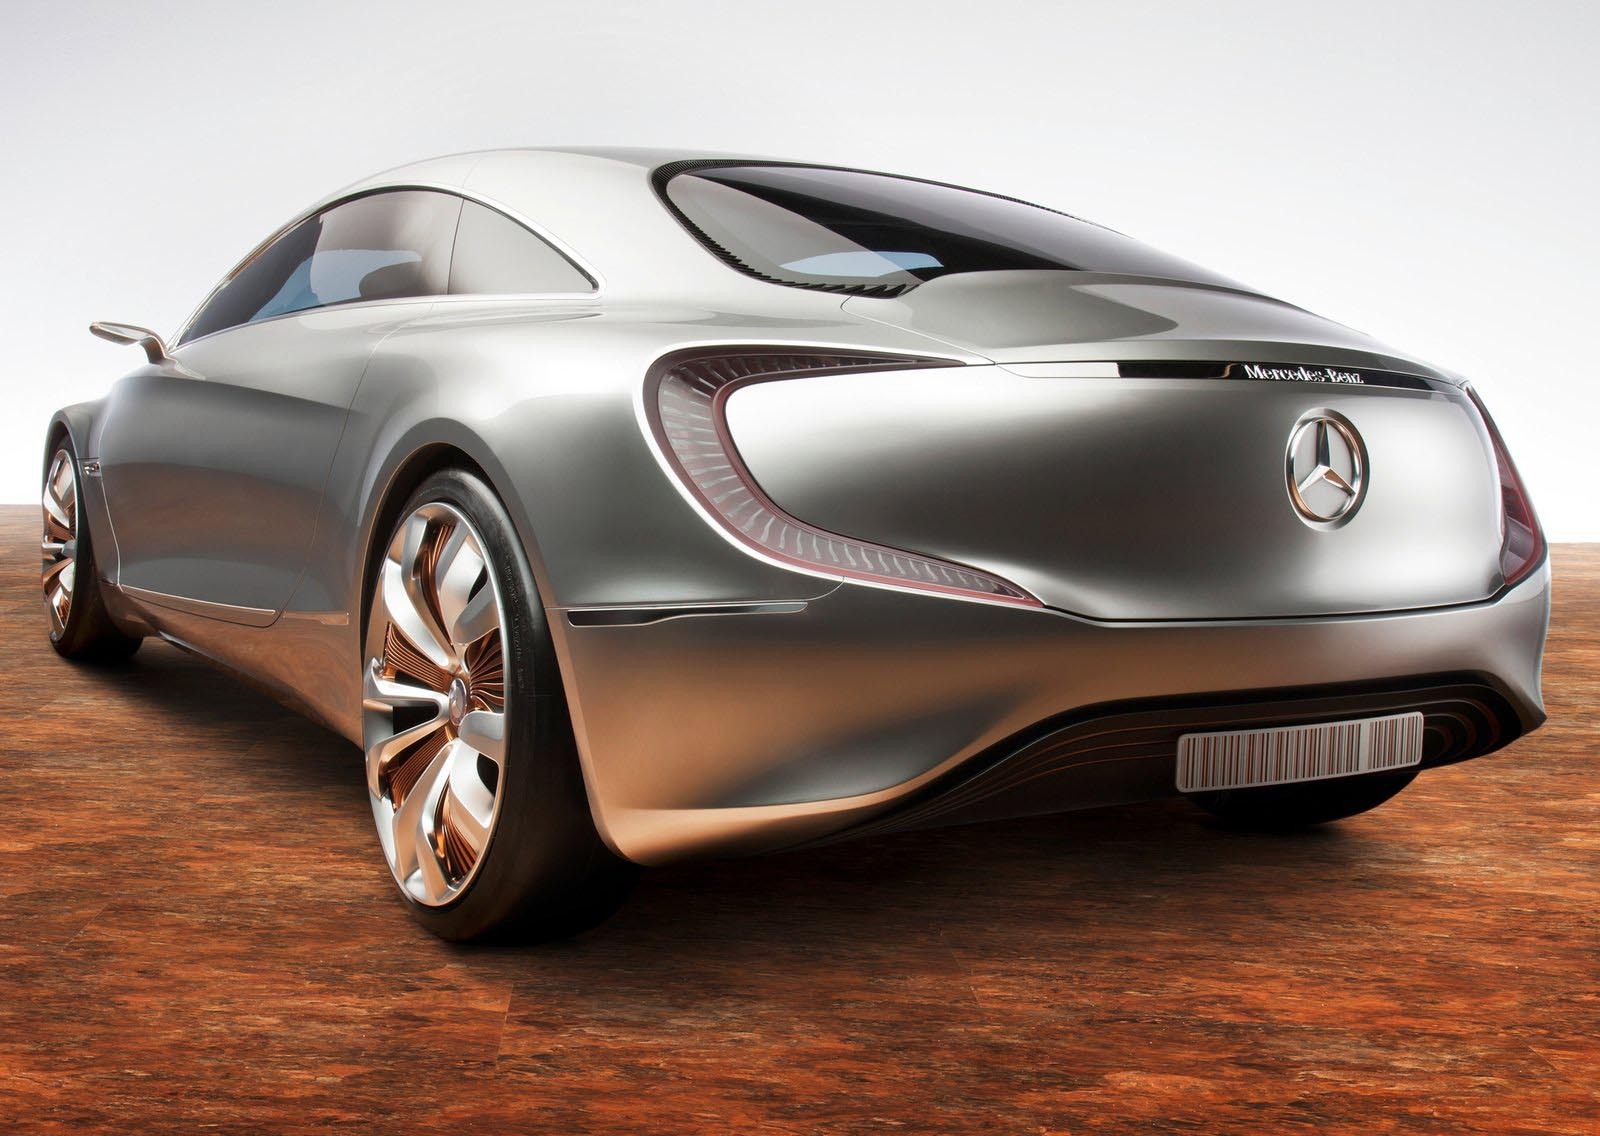 Gratie puterii maxime de 313 CP a celor patru motoare electrice, Mercedes Benz F125 are acceleratii excelente